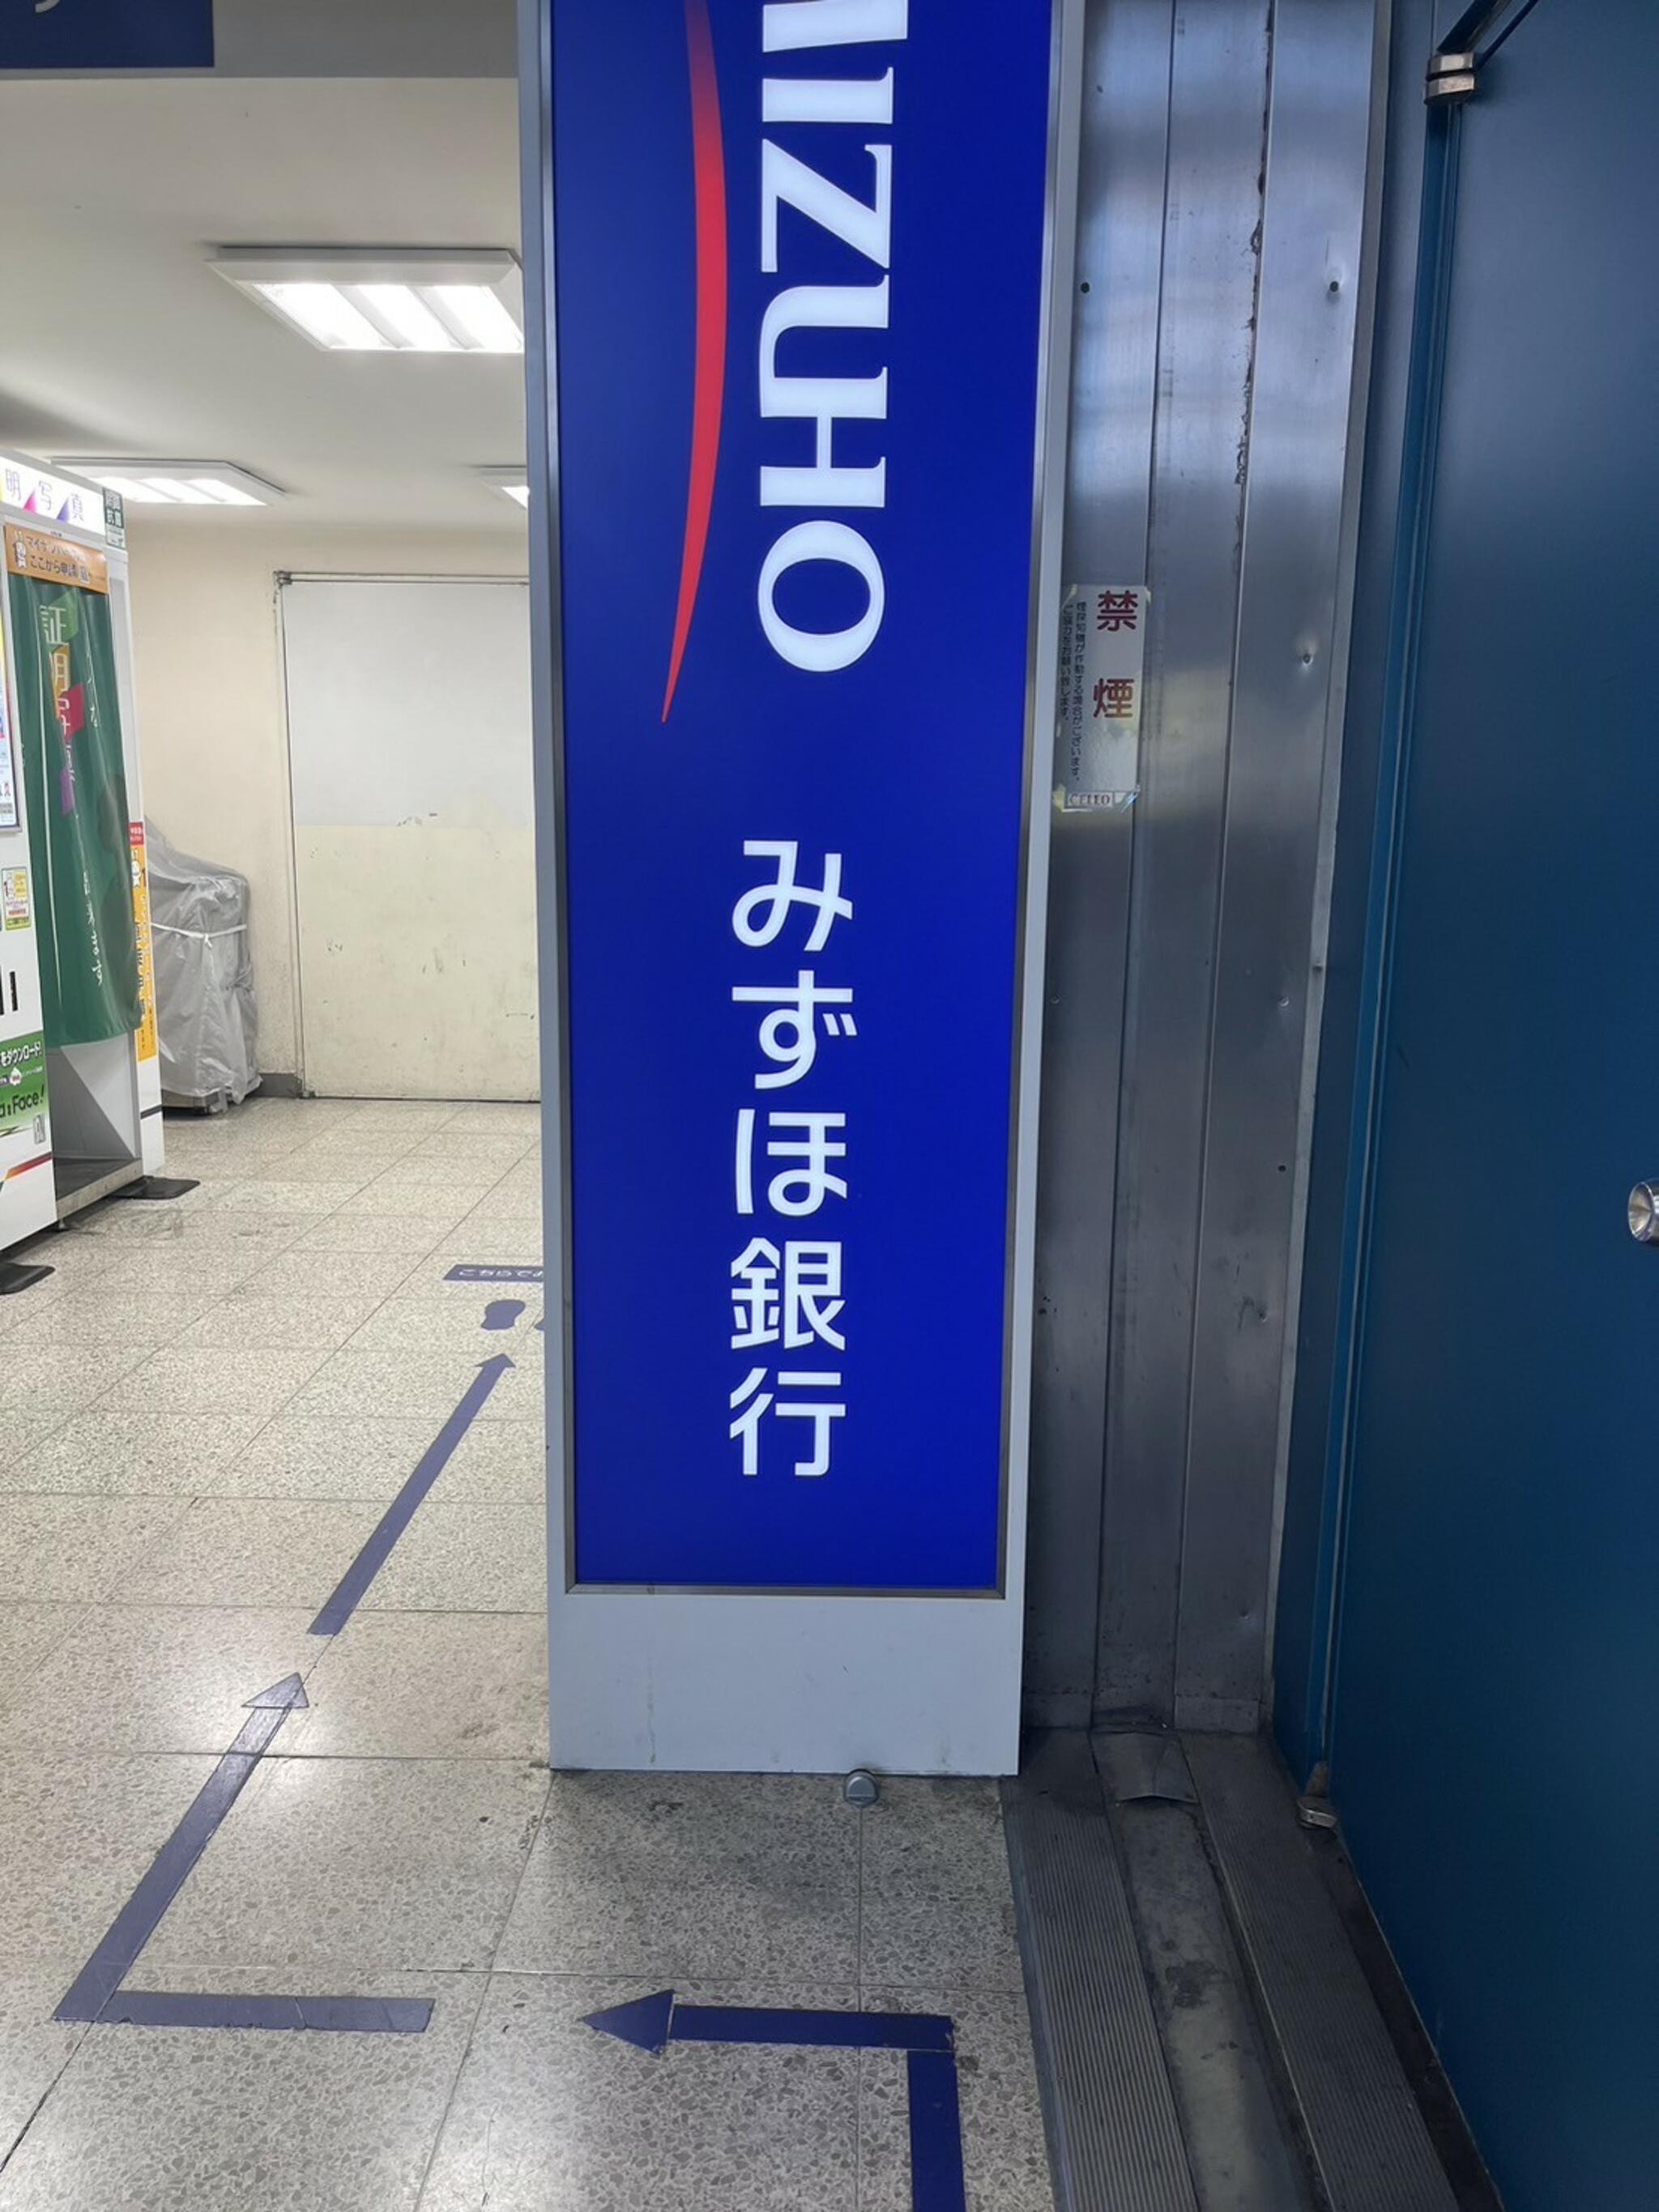 みずほ銀行 ATM 国分寺駅出張所の代表写真1